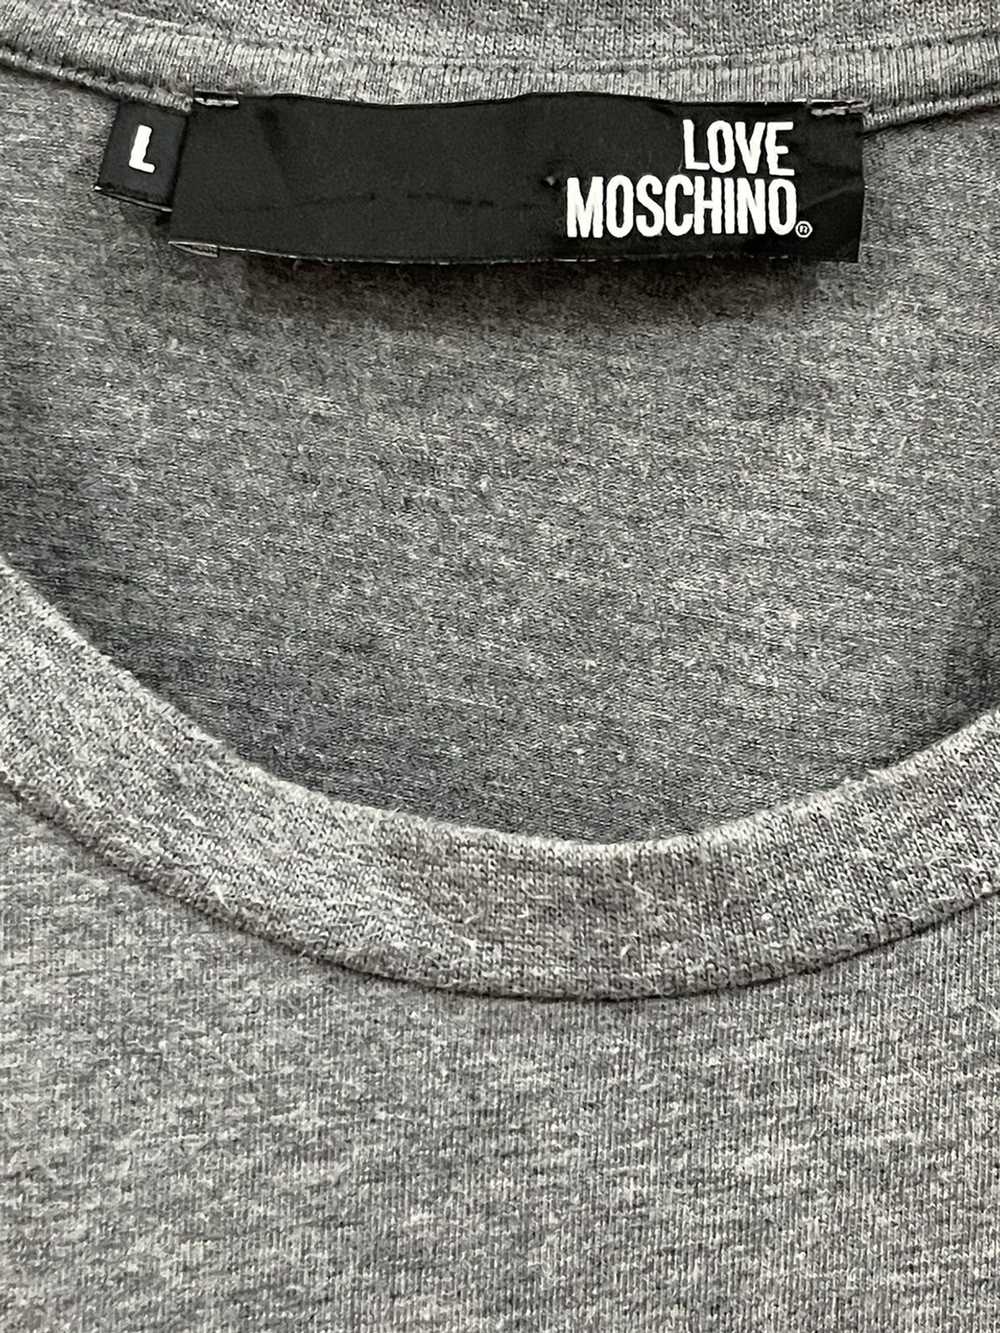 Italian Designers × Moschino Love Moschino T-Shirt - image 3